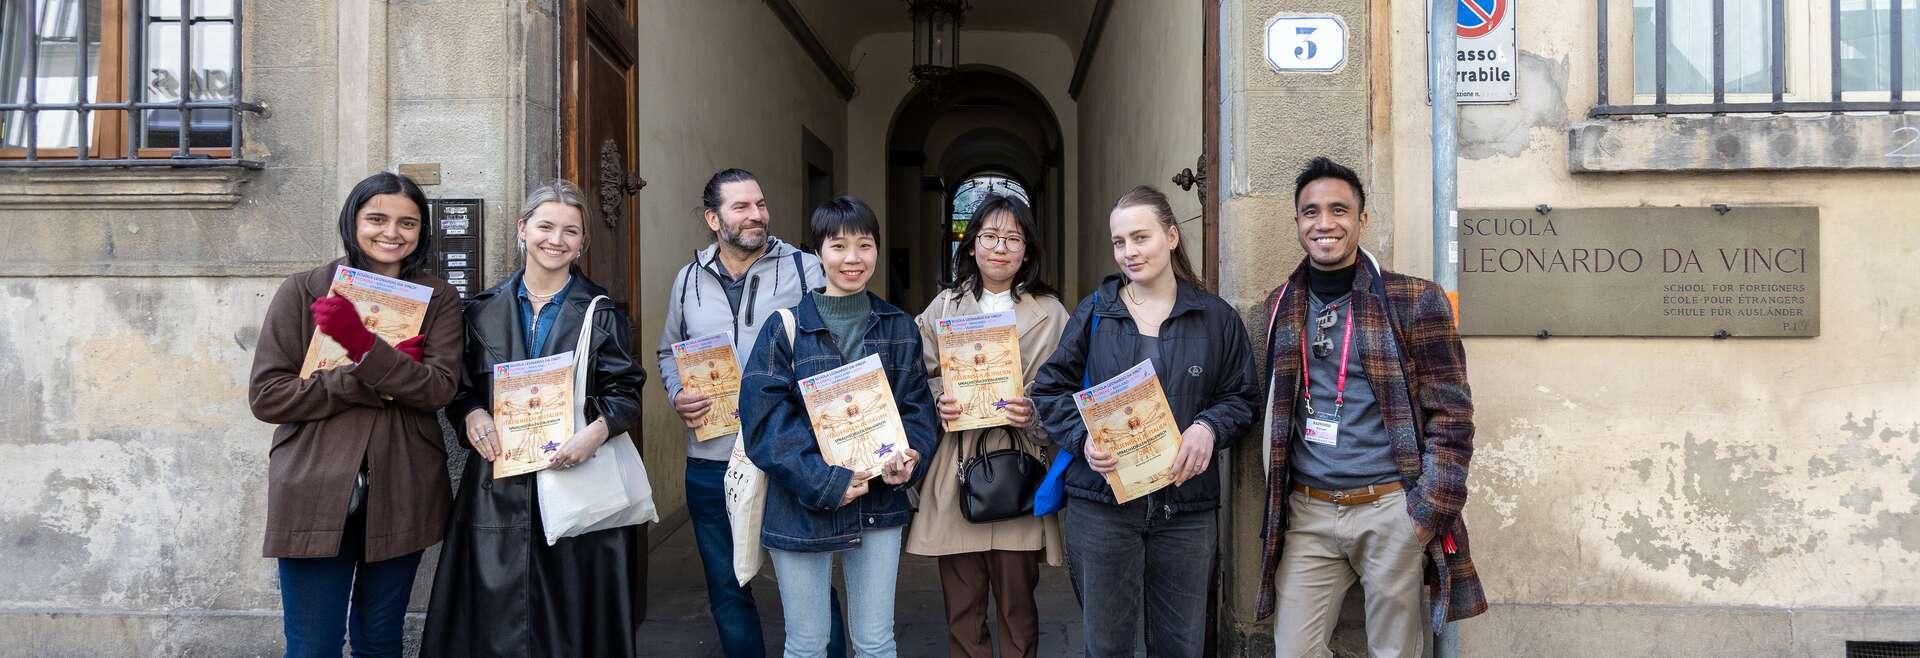 Séjour Linguistique Italie, Florence, Scuola Leonardo da Vinci Firenze, Visite de la ville